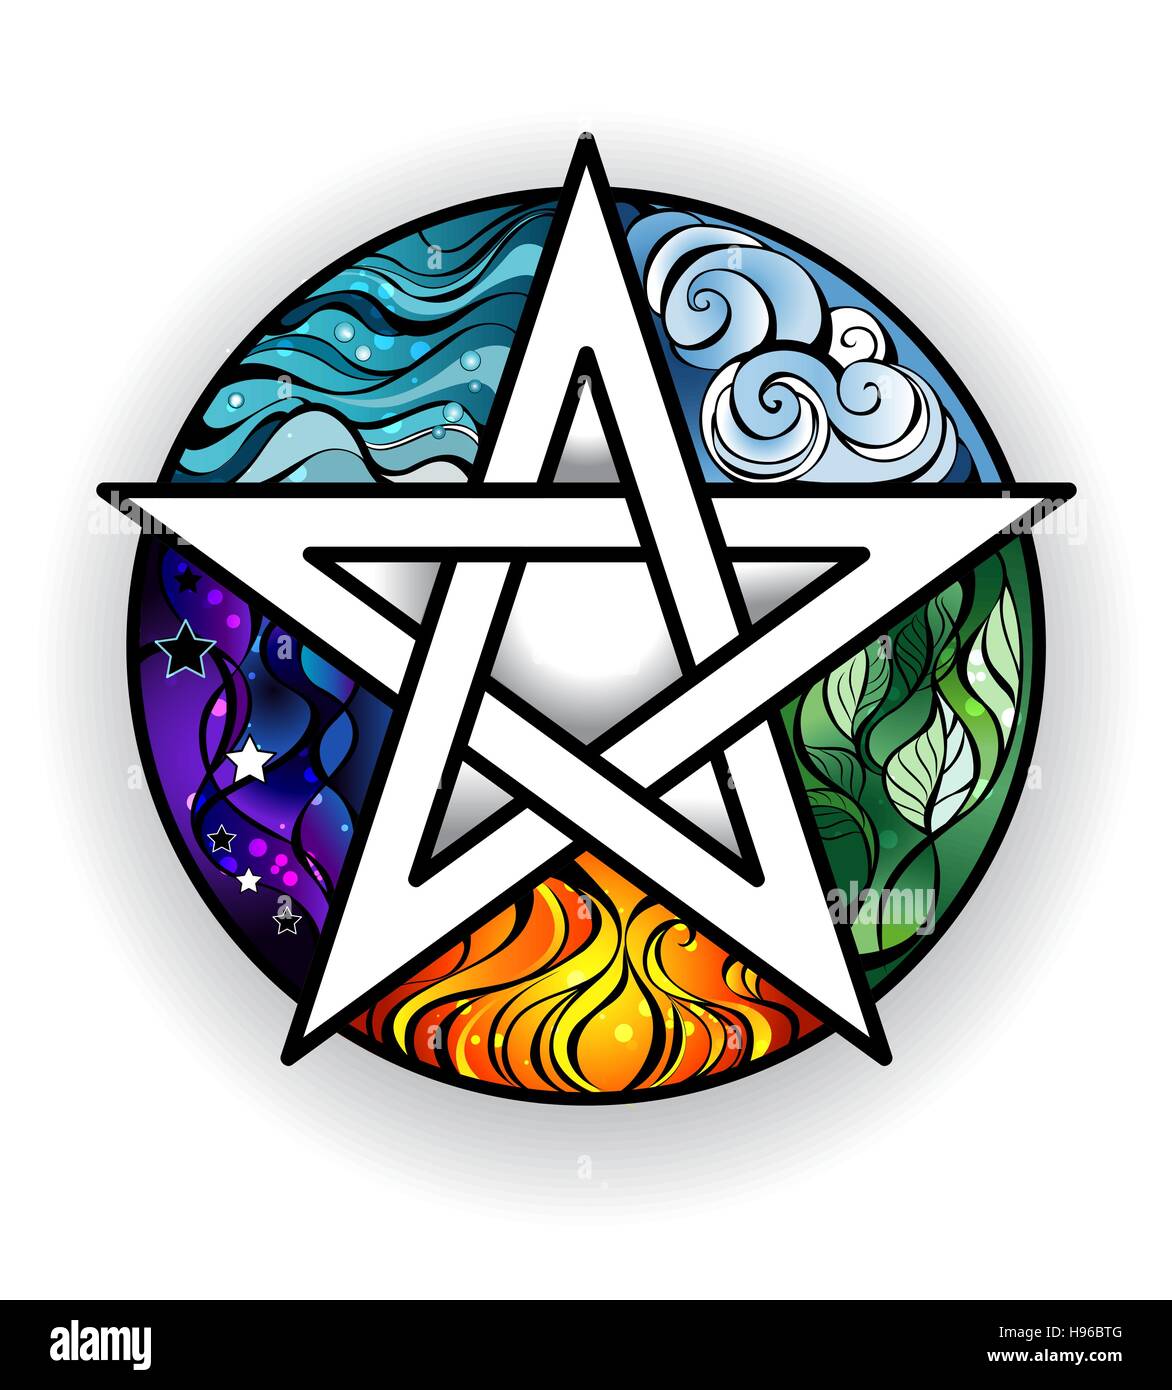 Pentagramme magique peint artistiquement avec des éléments de l'eau, terre, air, feu, astral, sur un fond blanc. Style de tatouage. Symbole magique. Illustration de Vecteur